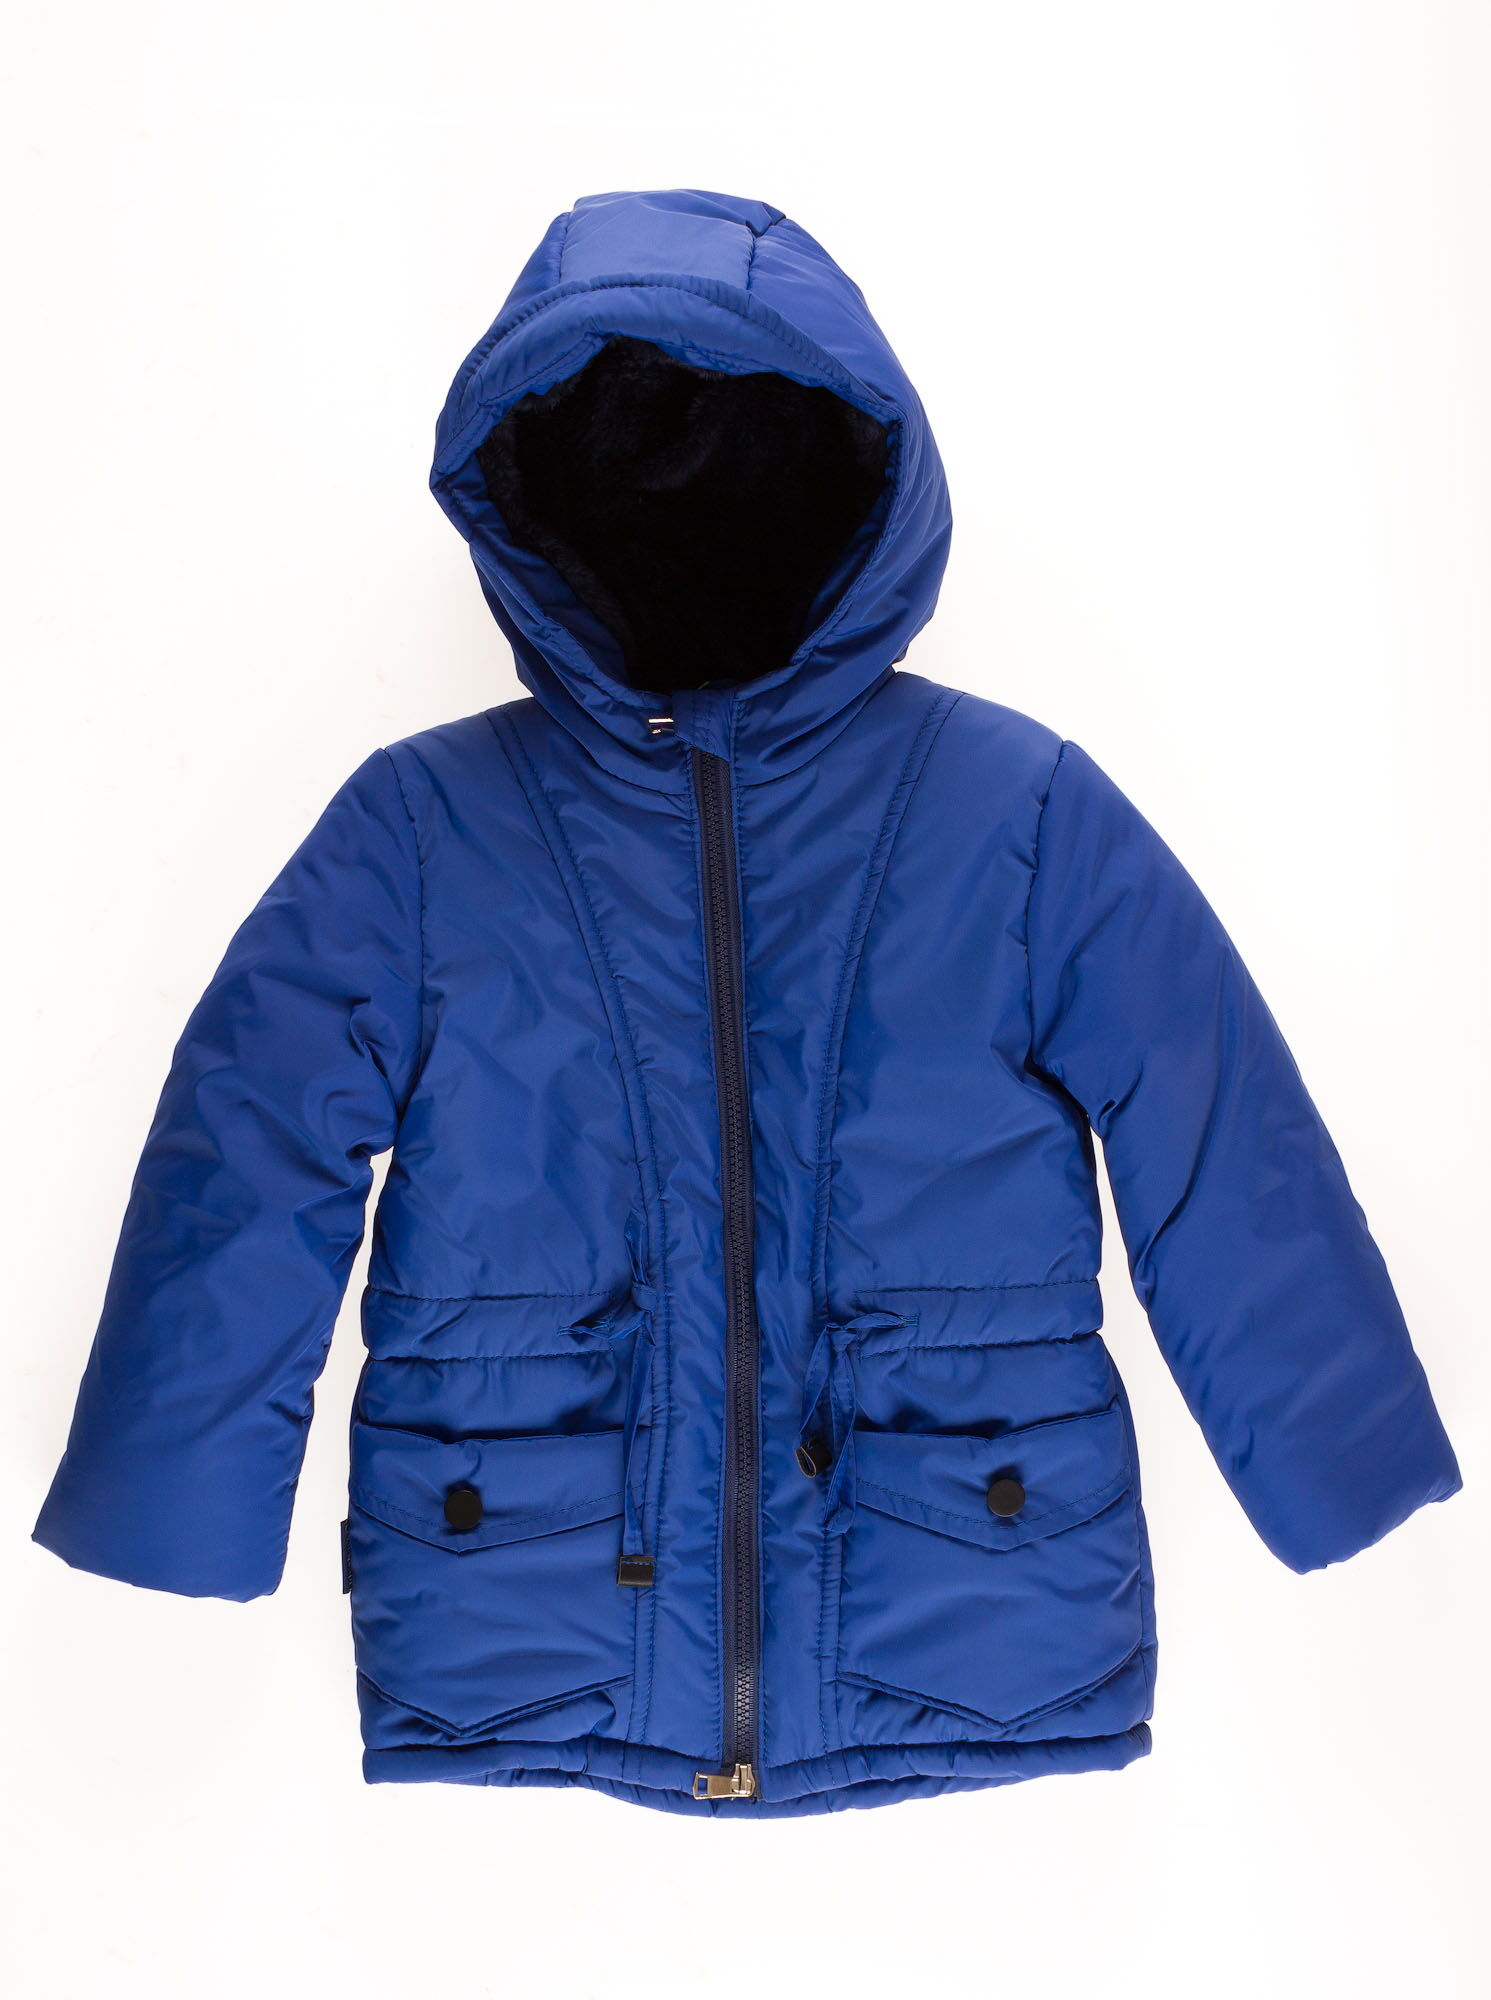 Куртка зимняя для мальчика Одягайко синий электрик 20012 - цена